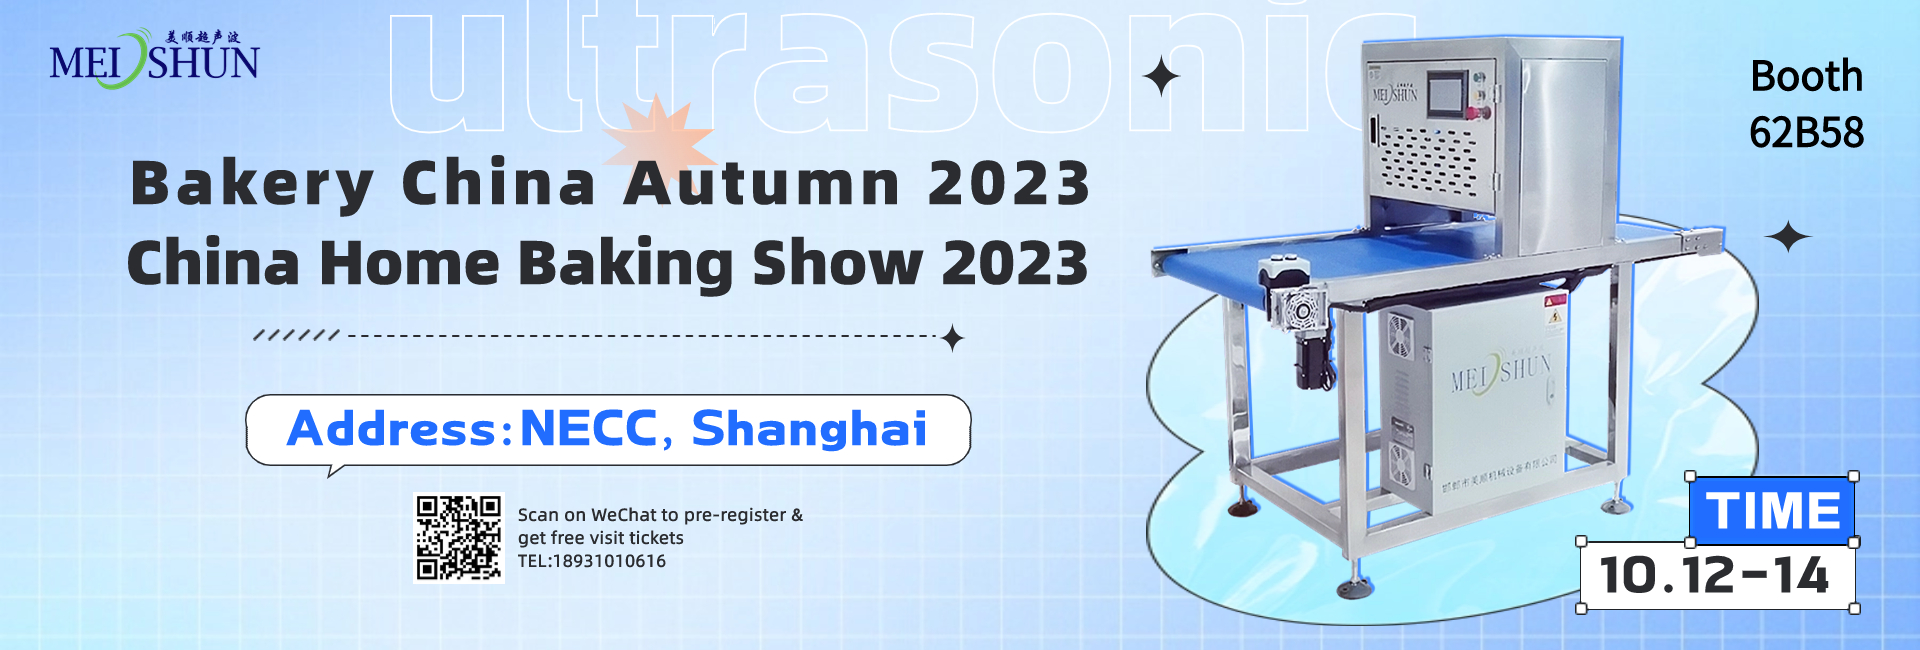 2023 La octava exposición internacional de otoño de panadería de China